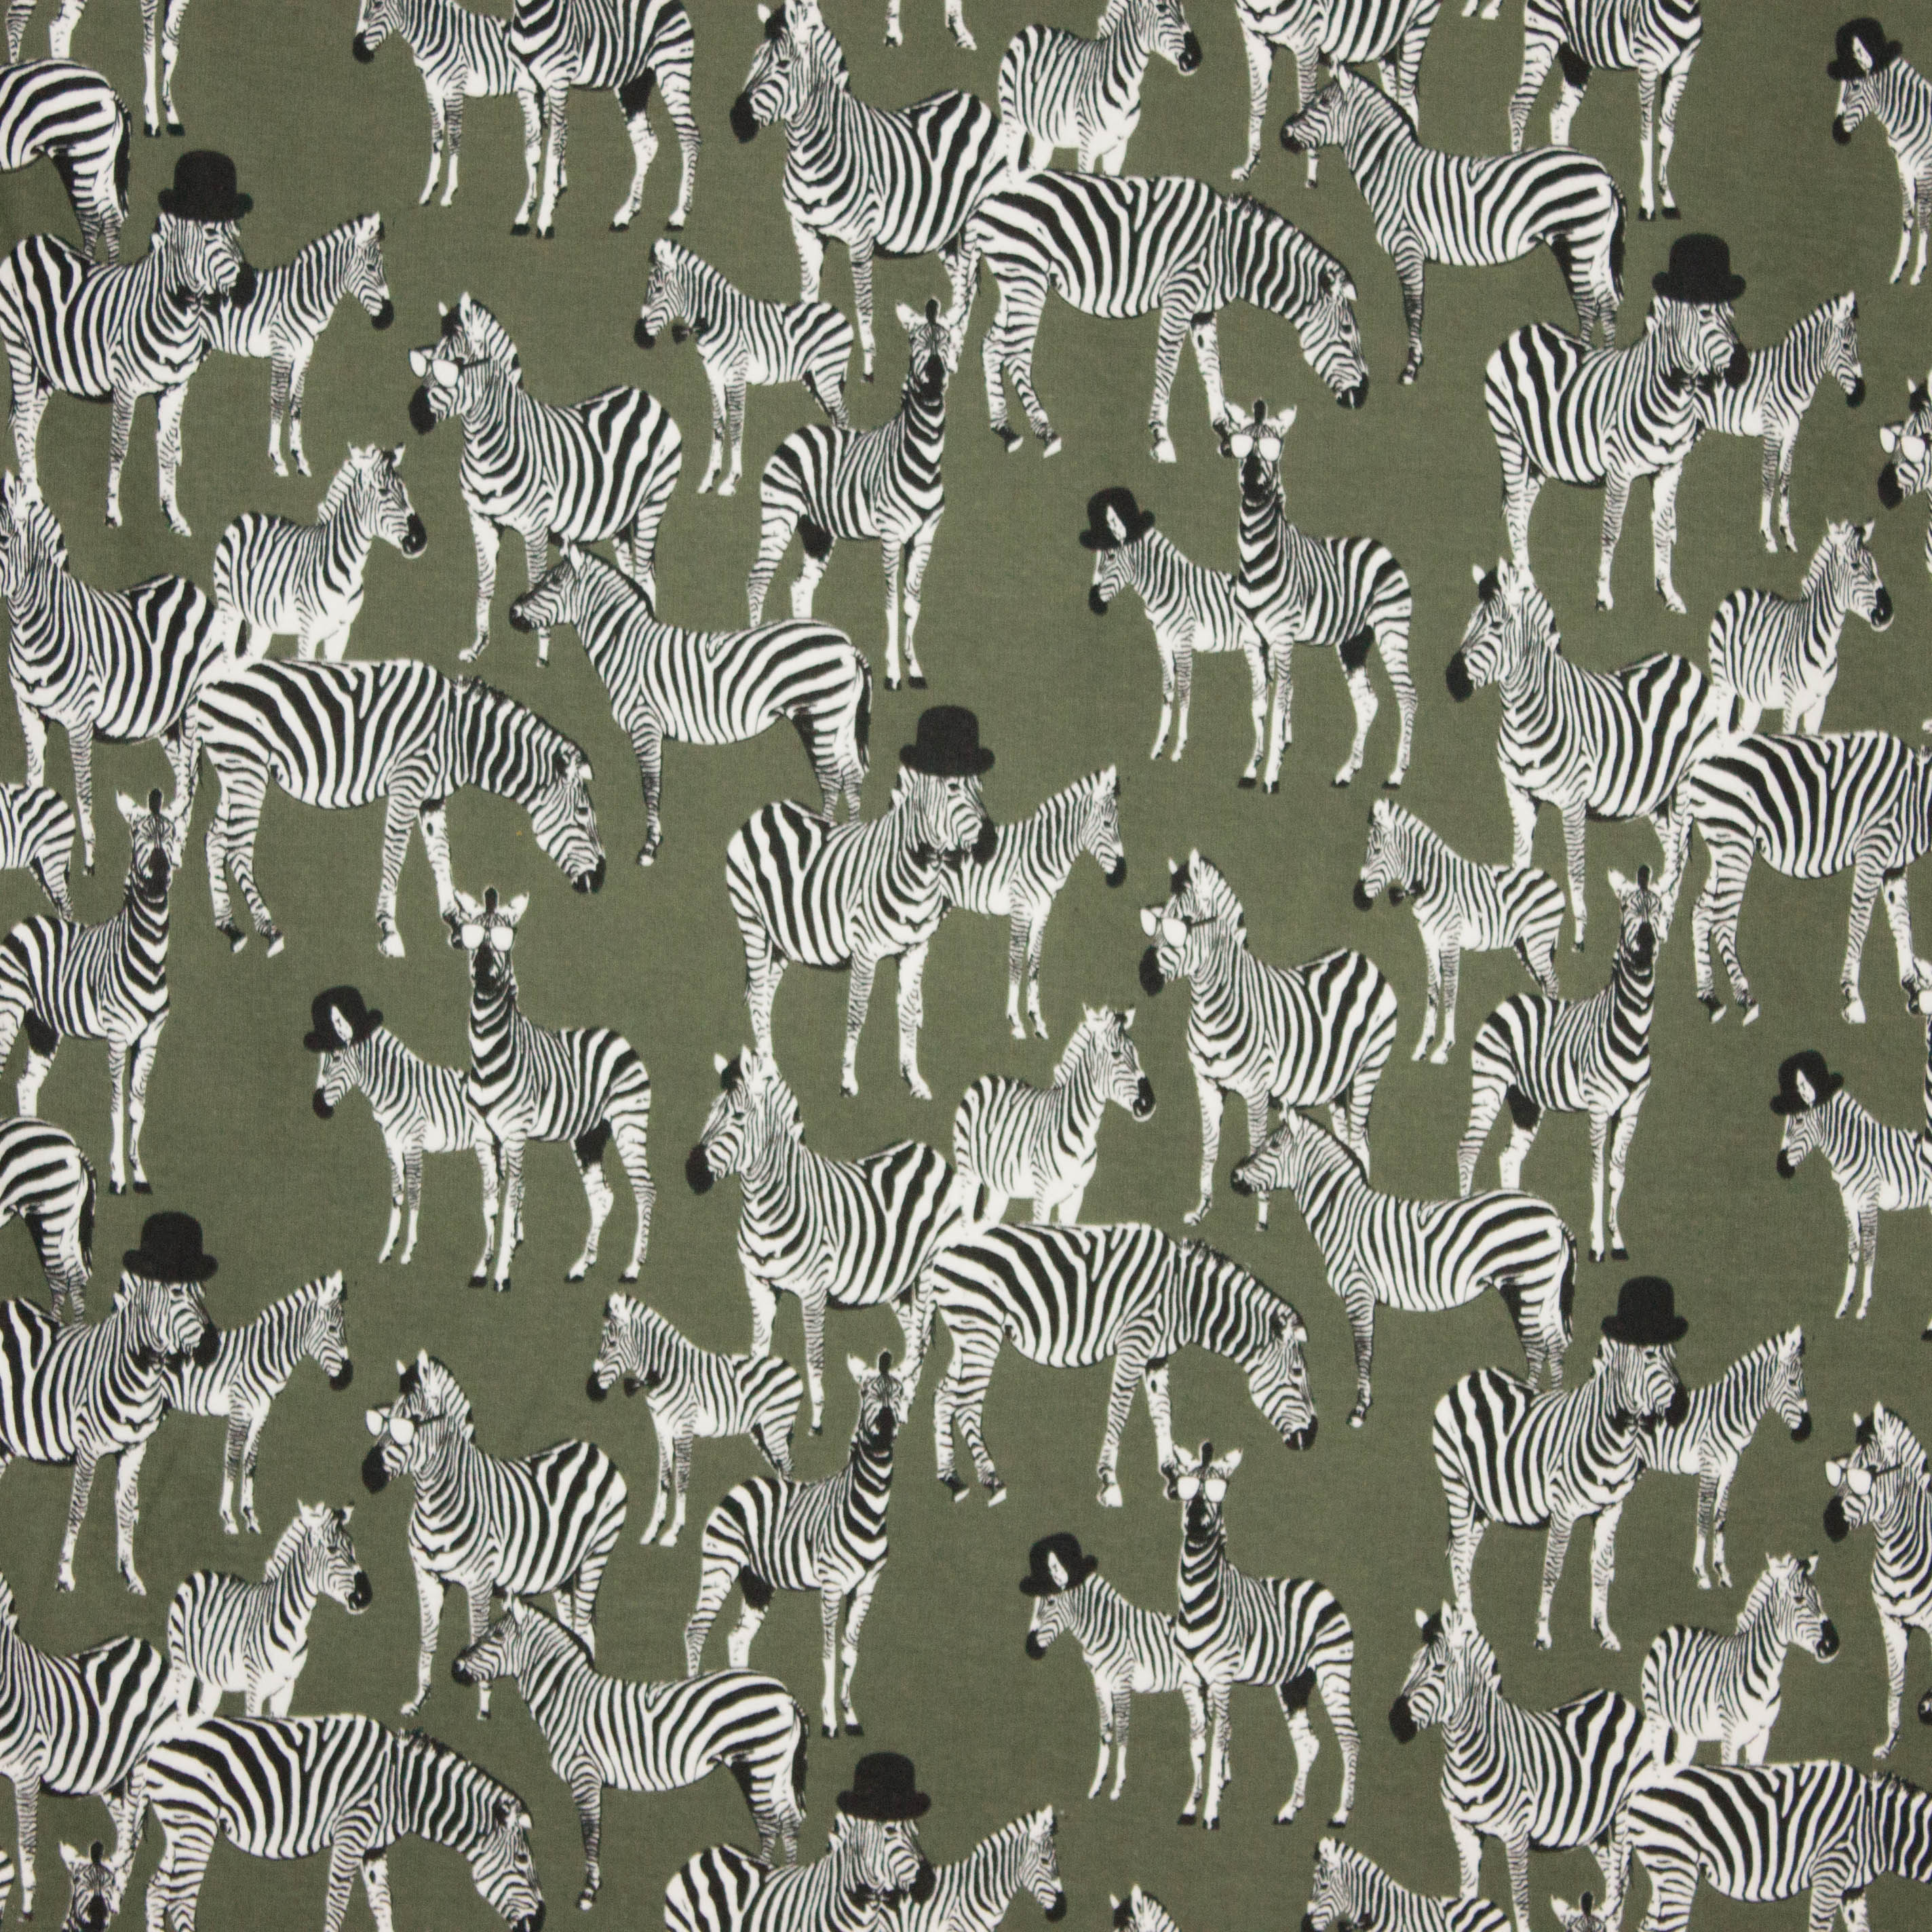 Sweater met zebra print op achter grond